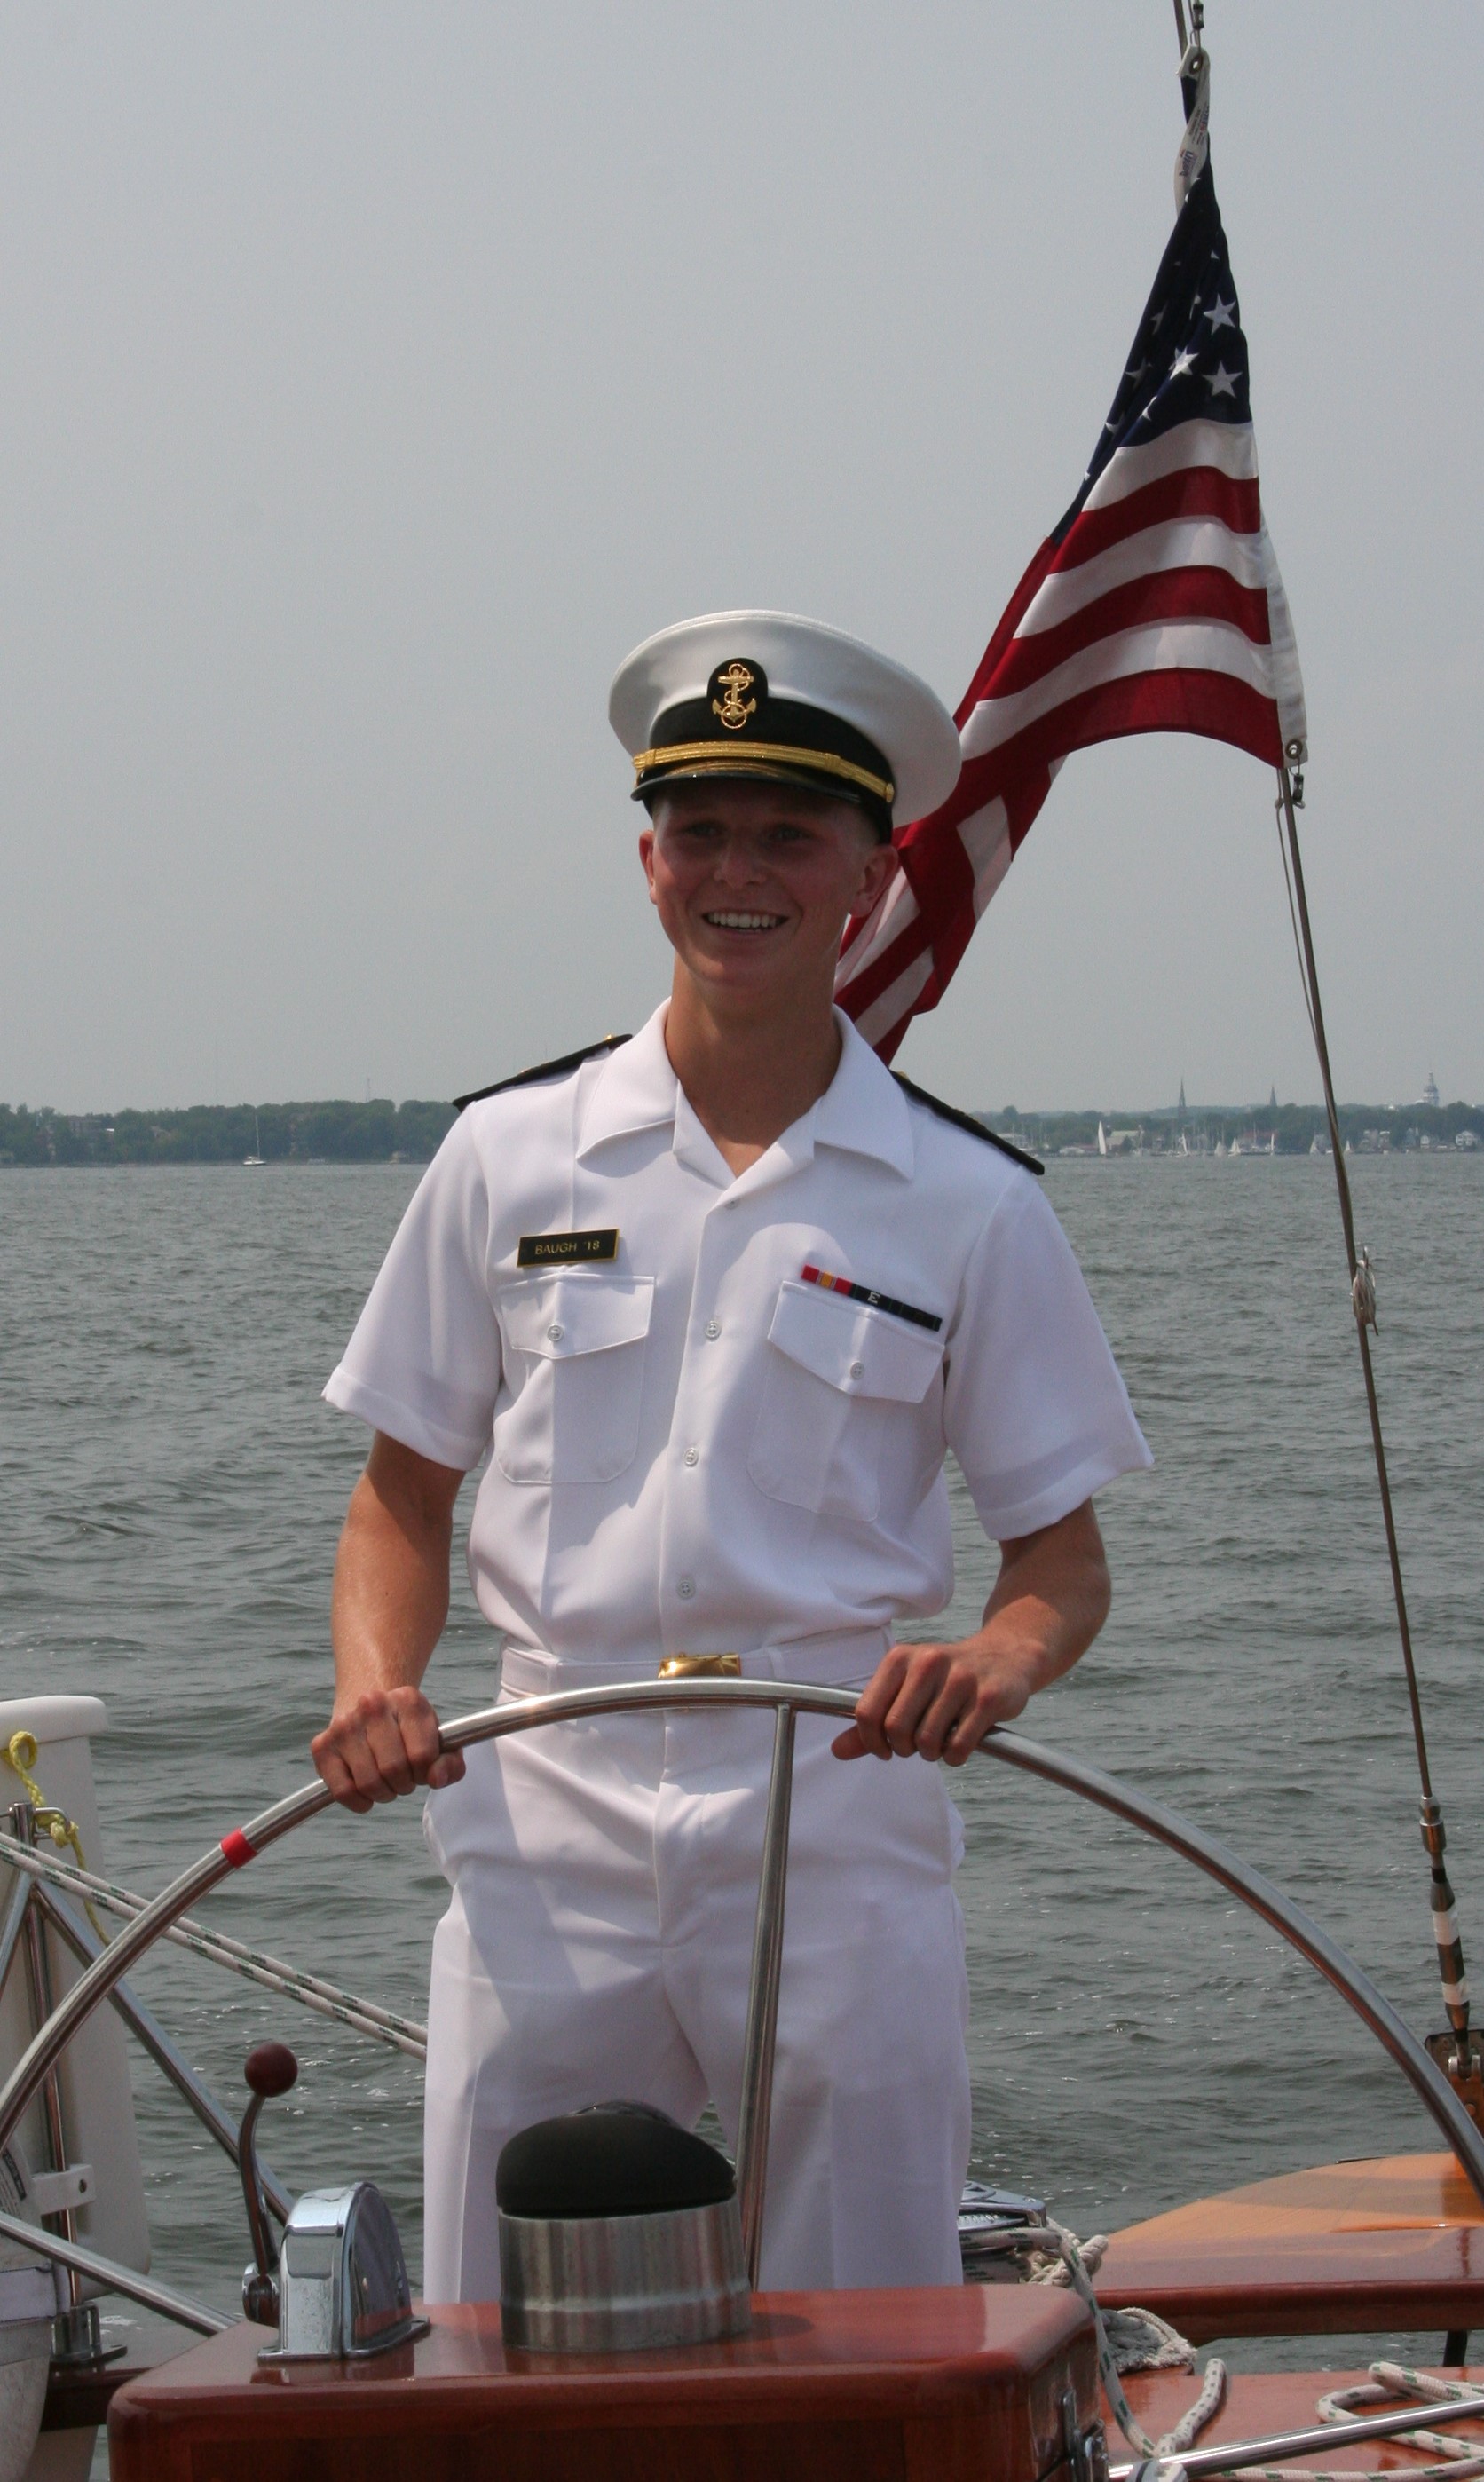 Man in USNA uniform steering the schooner